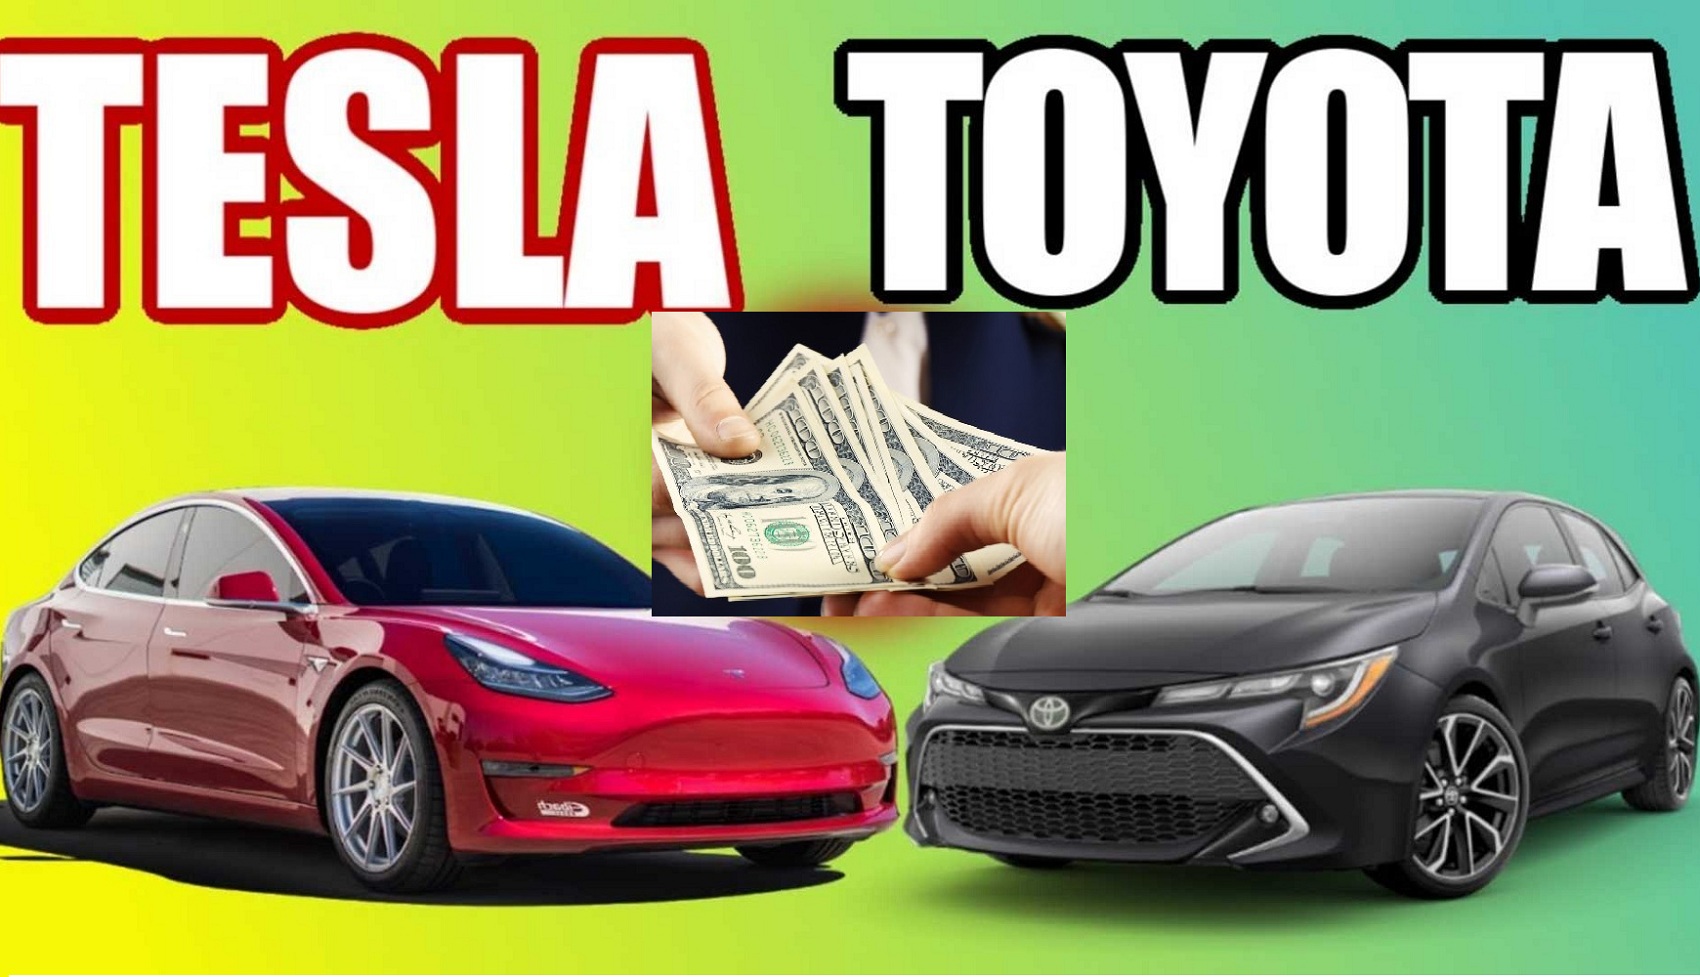 Toyota kém xa Tesla về khả năng kiếm lời trên mỗi xe